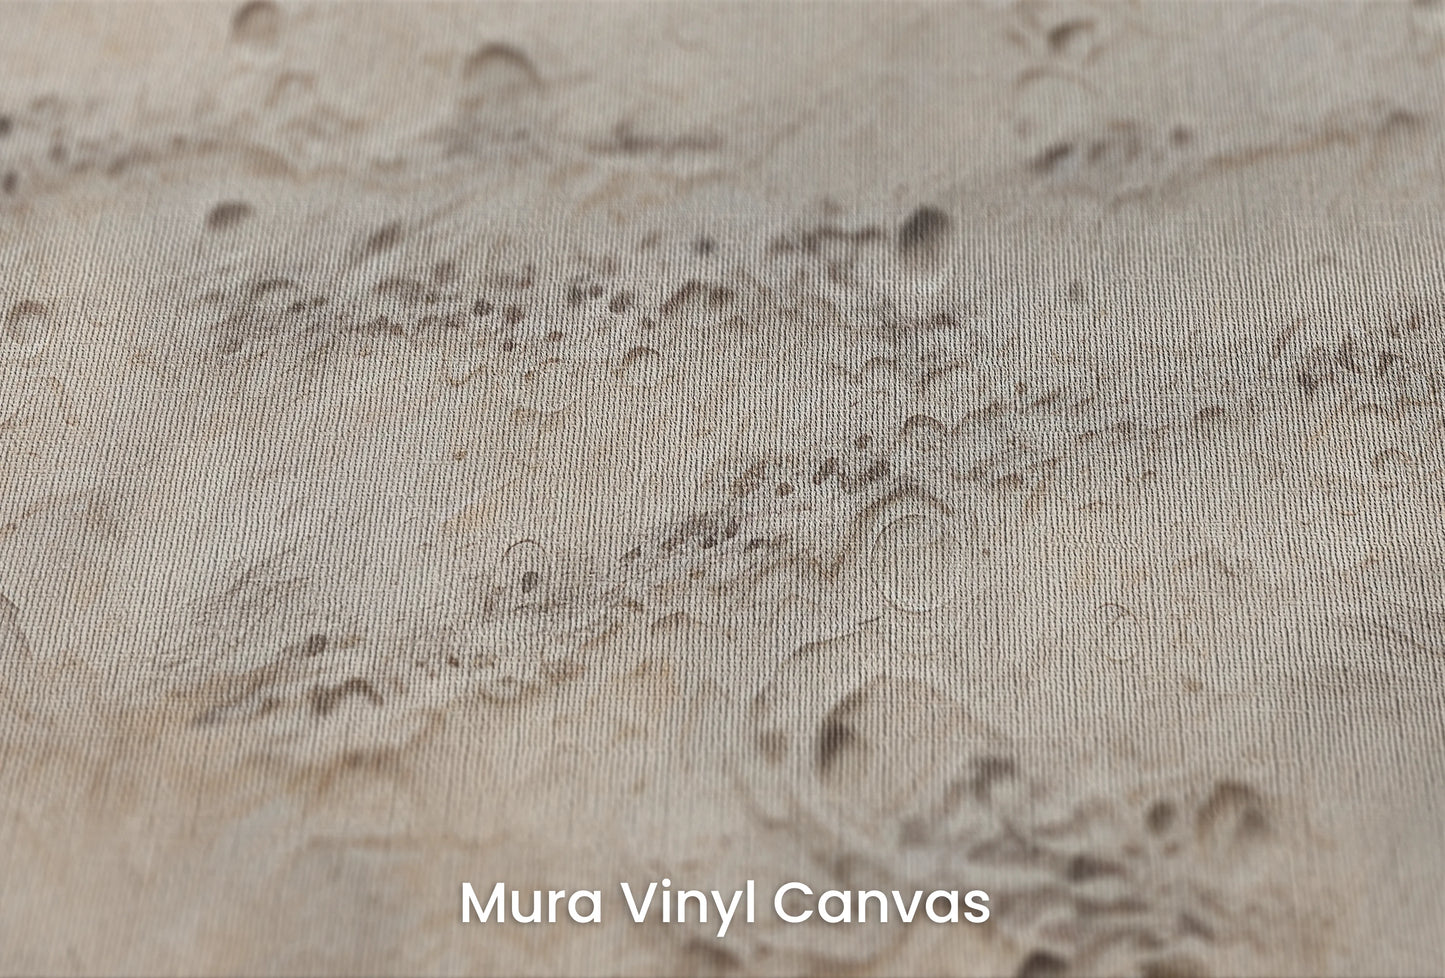 Zbliżenie na artystyczną fototapetę o nazwie Lunar Terrain na podłożu Mura Vinyl Canvas - faktura naturalnego płótna.